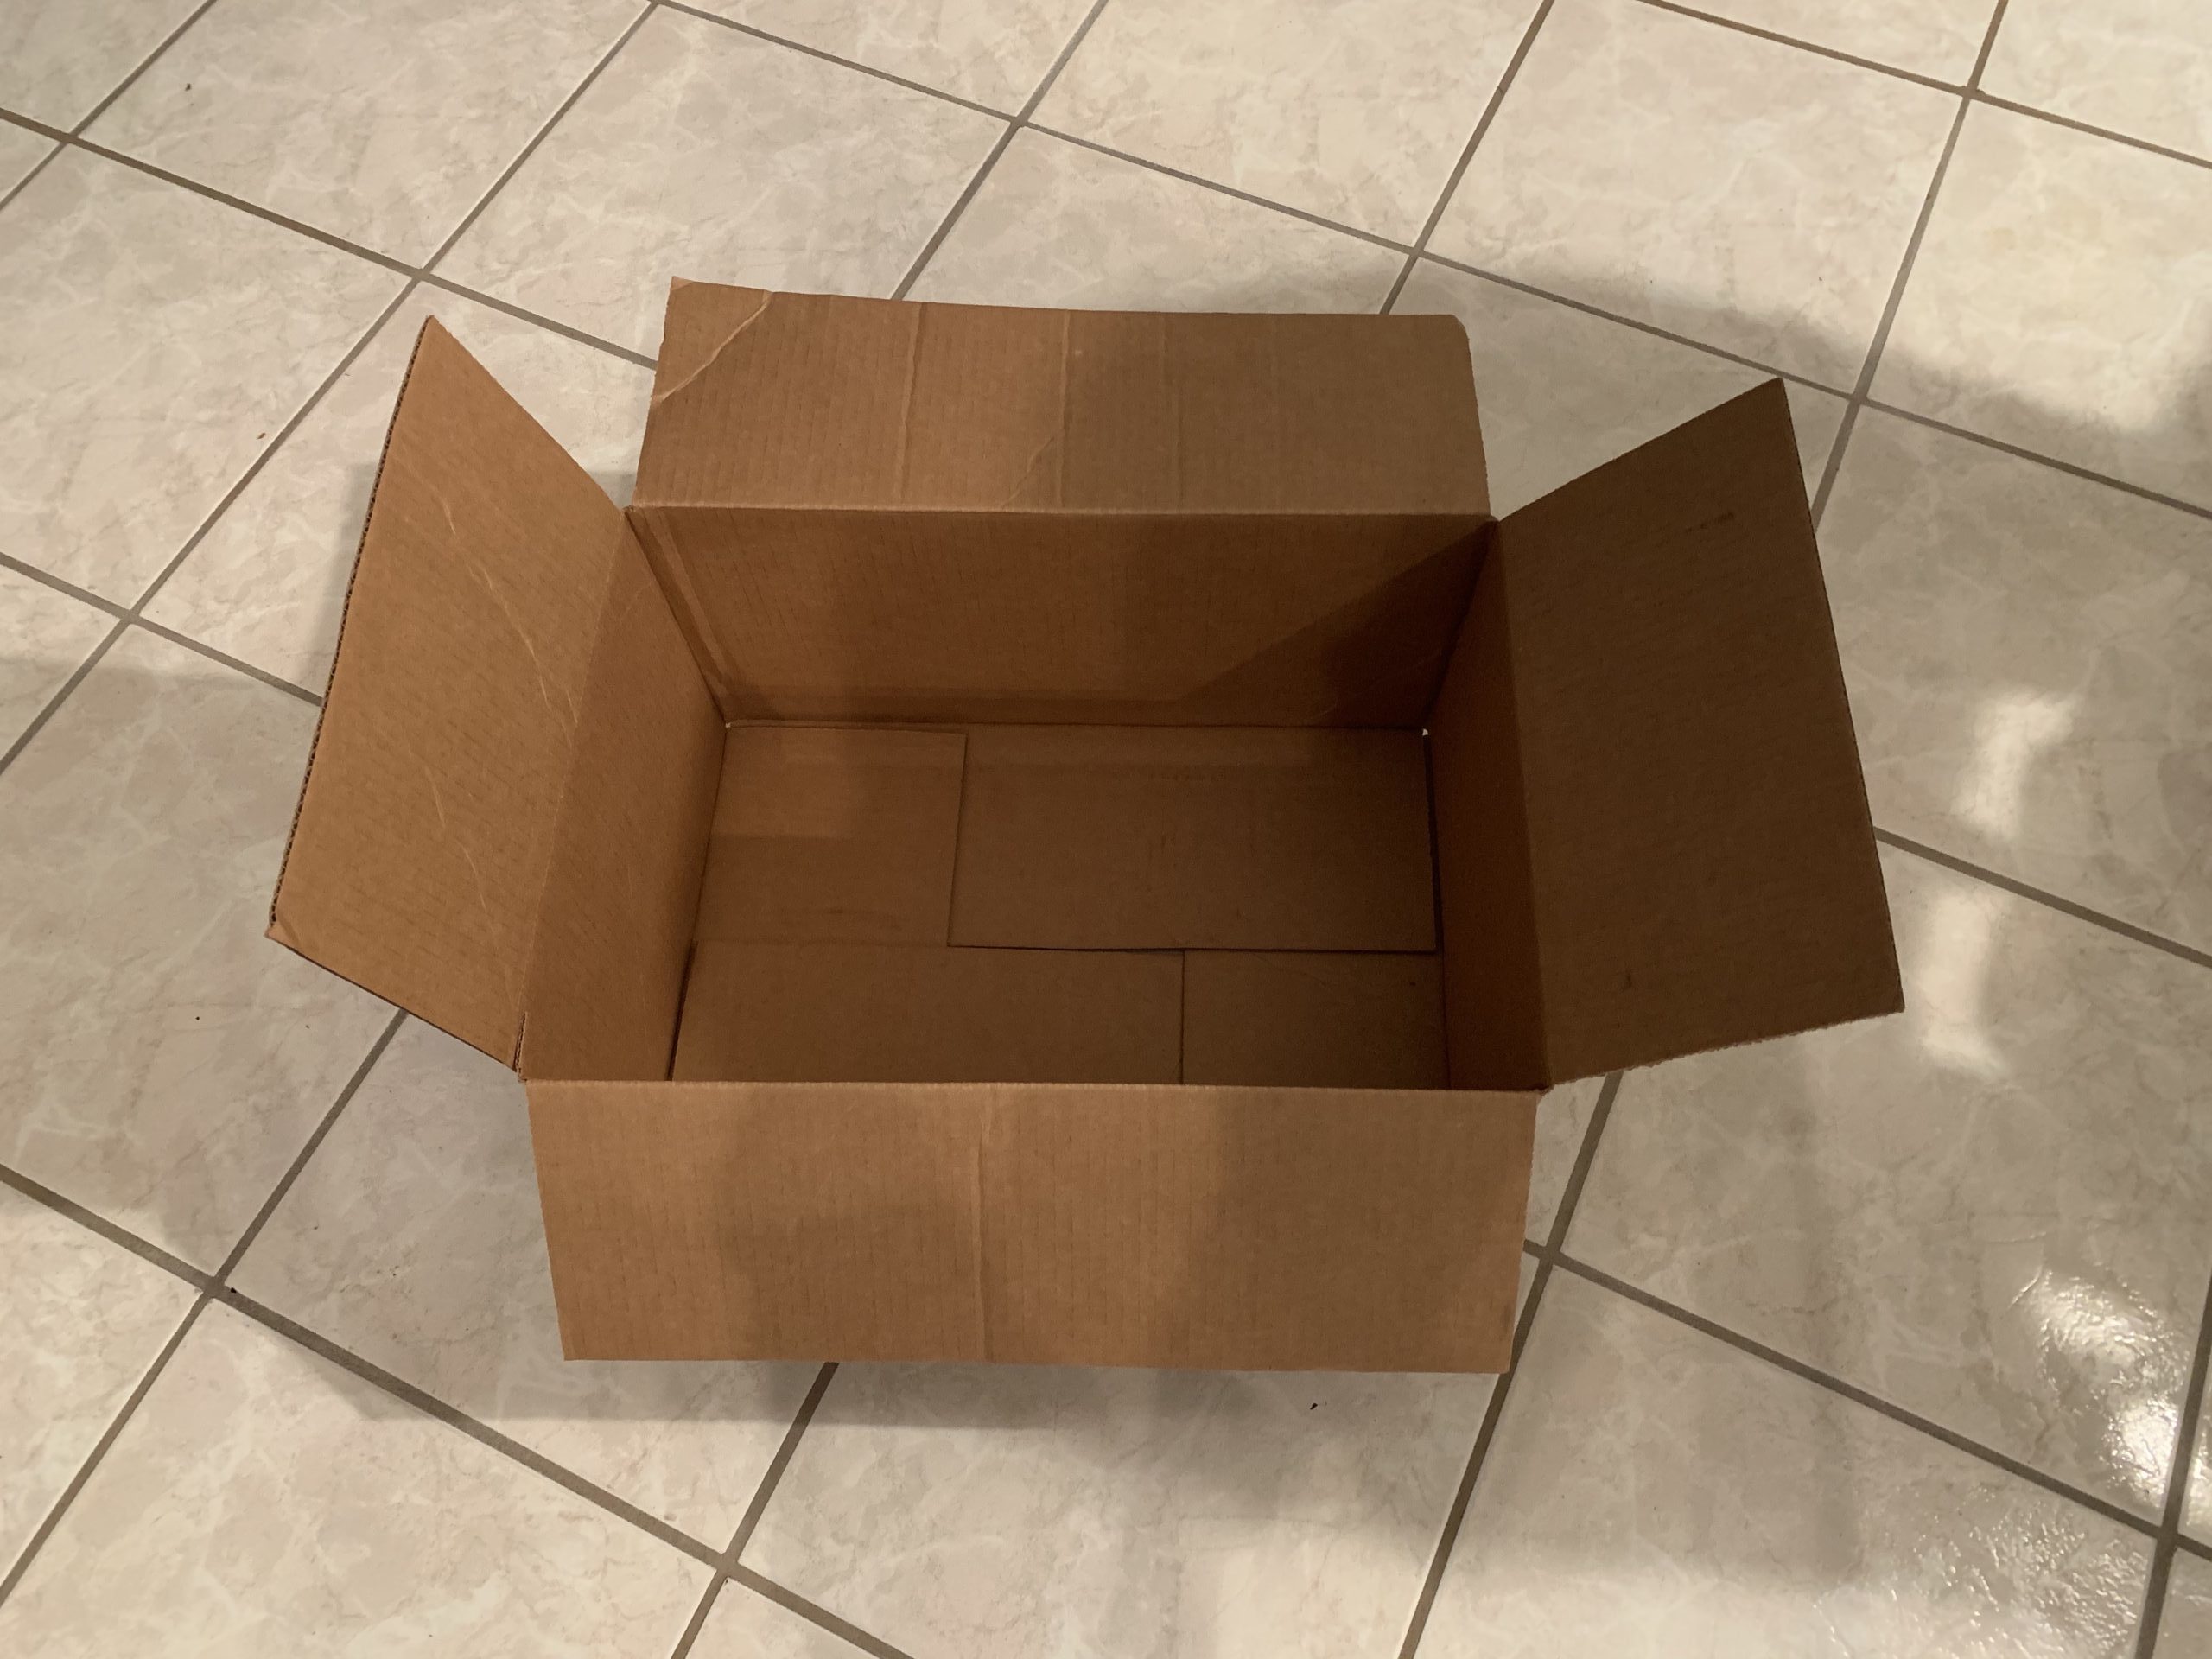 a cardboard box on a tile floor